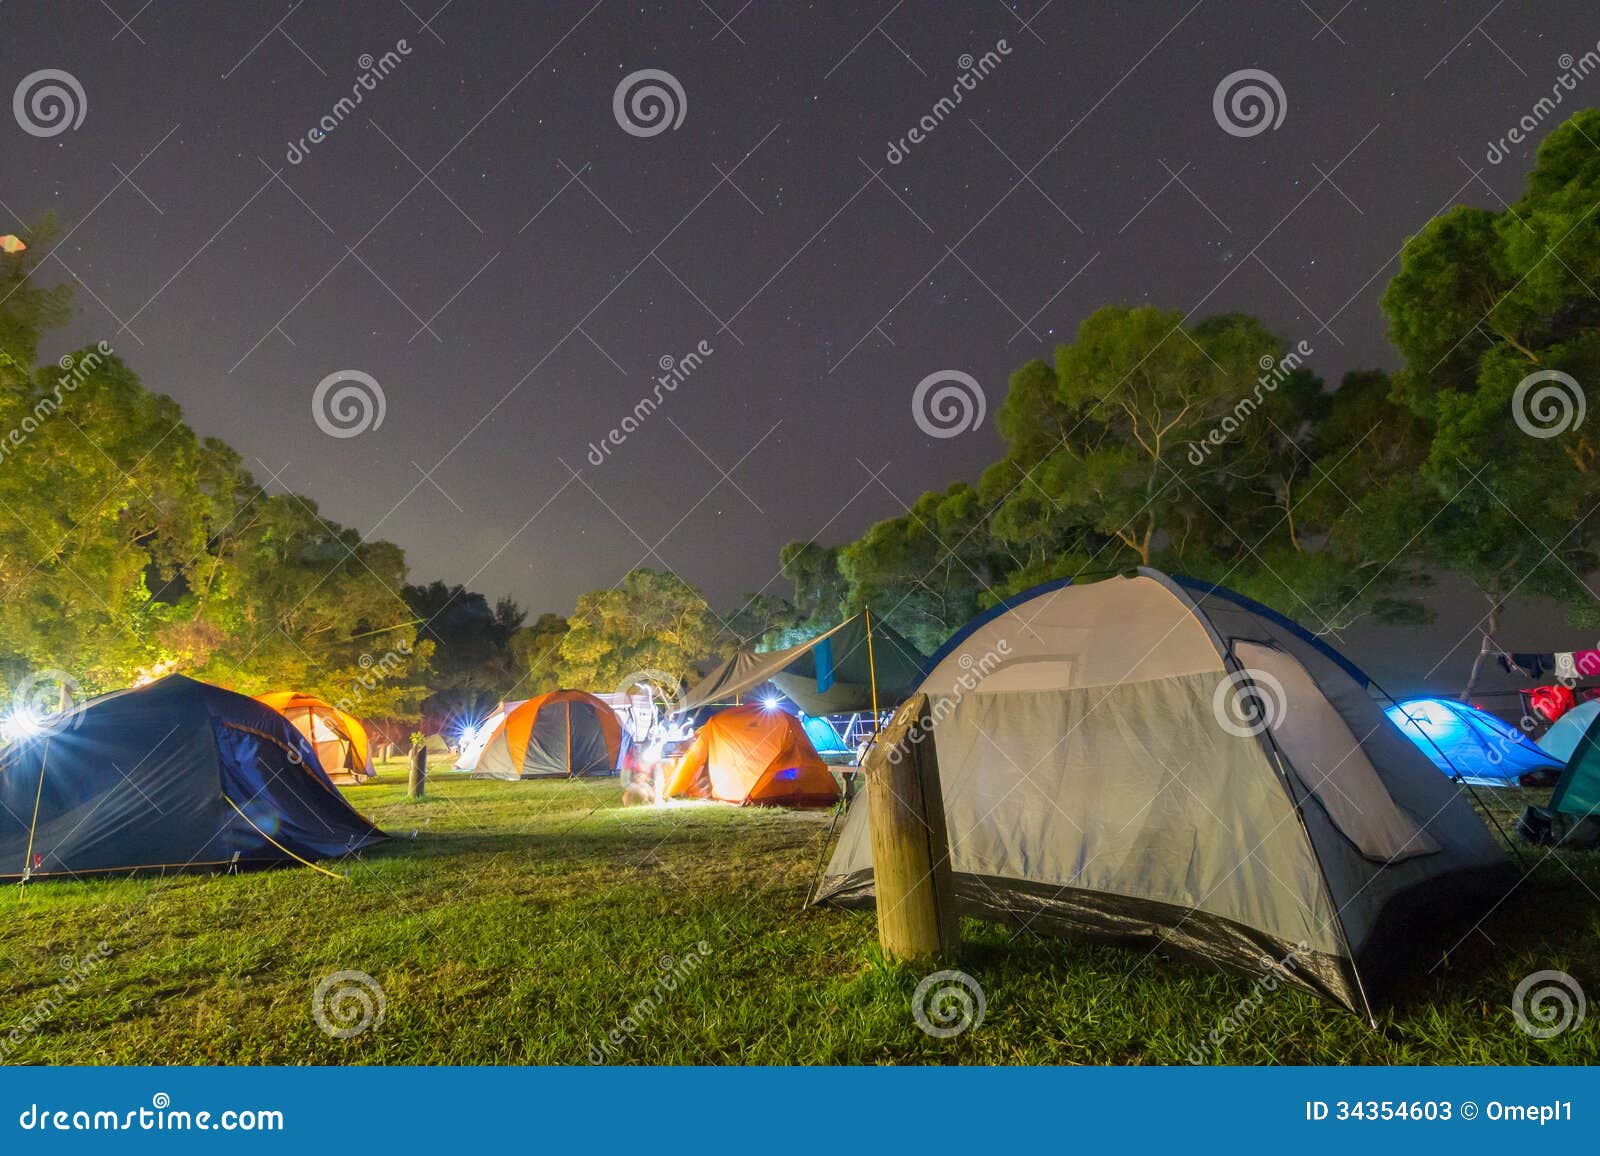 campsite at night